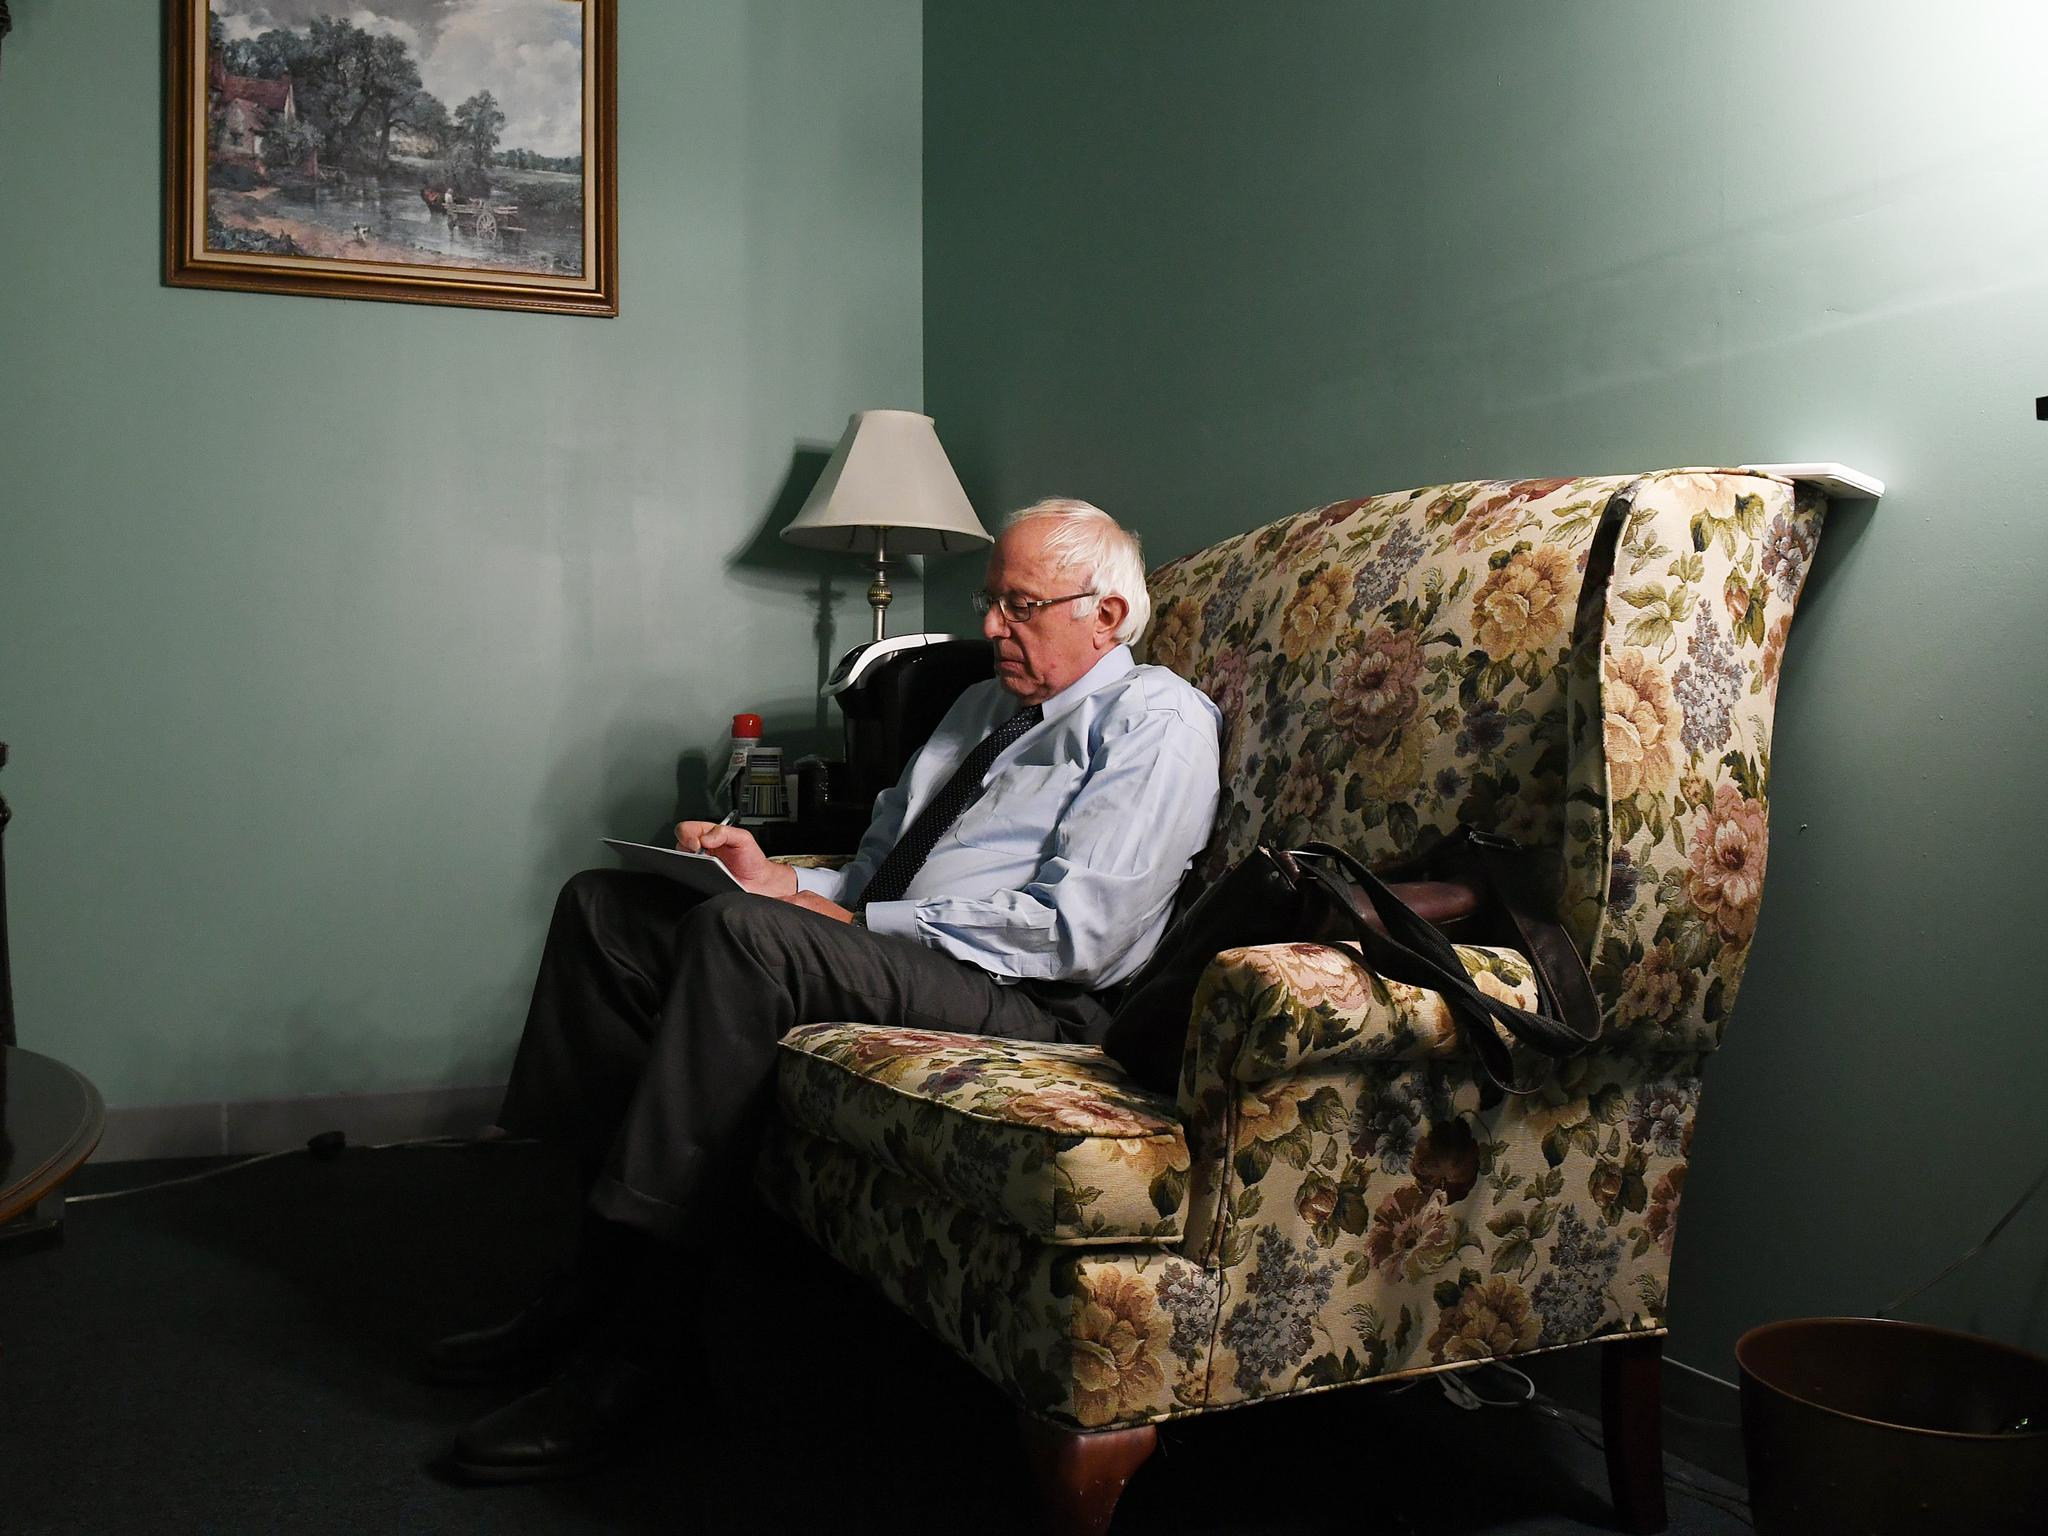 Sanders prepares to speak to voters in a televised speech on 16 June Pool/Getty